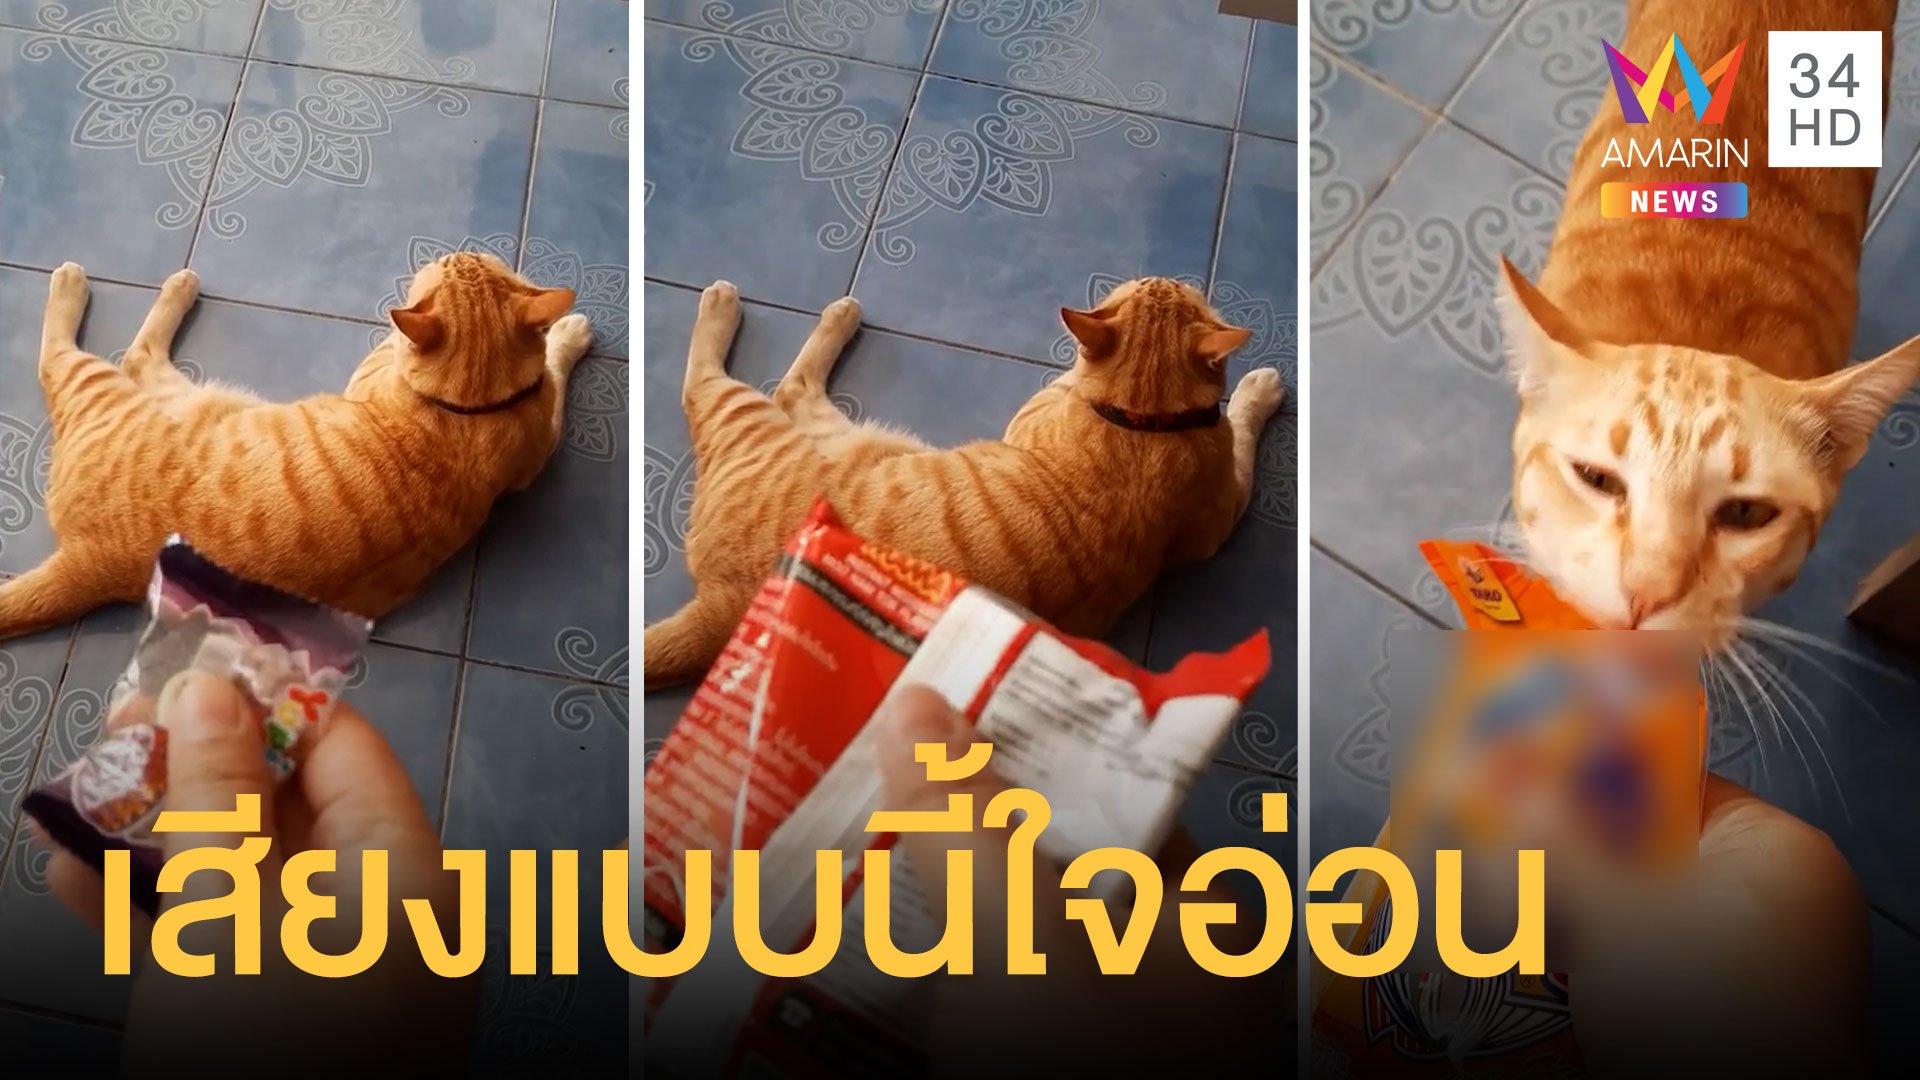 น้องแมวรู้มากจำเสียงถุงขนมที่ชอบได้ | ข่าวอรุณอมรินทร์ | 18 มี.ค. 64 | AMARIN TVHD34